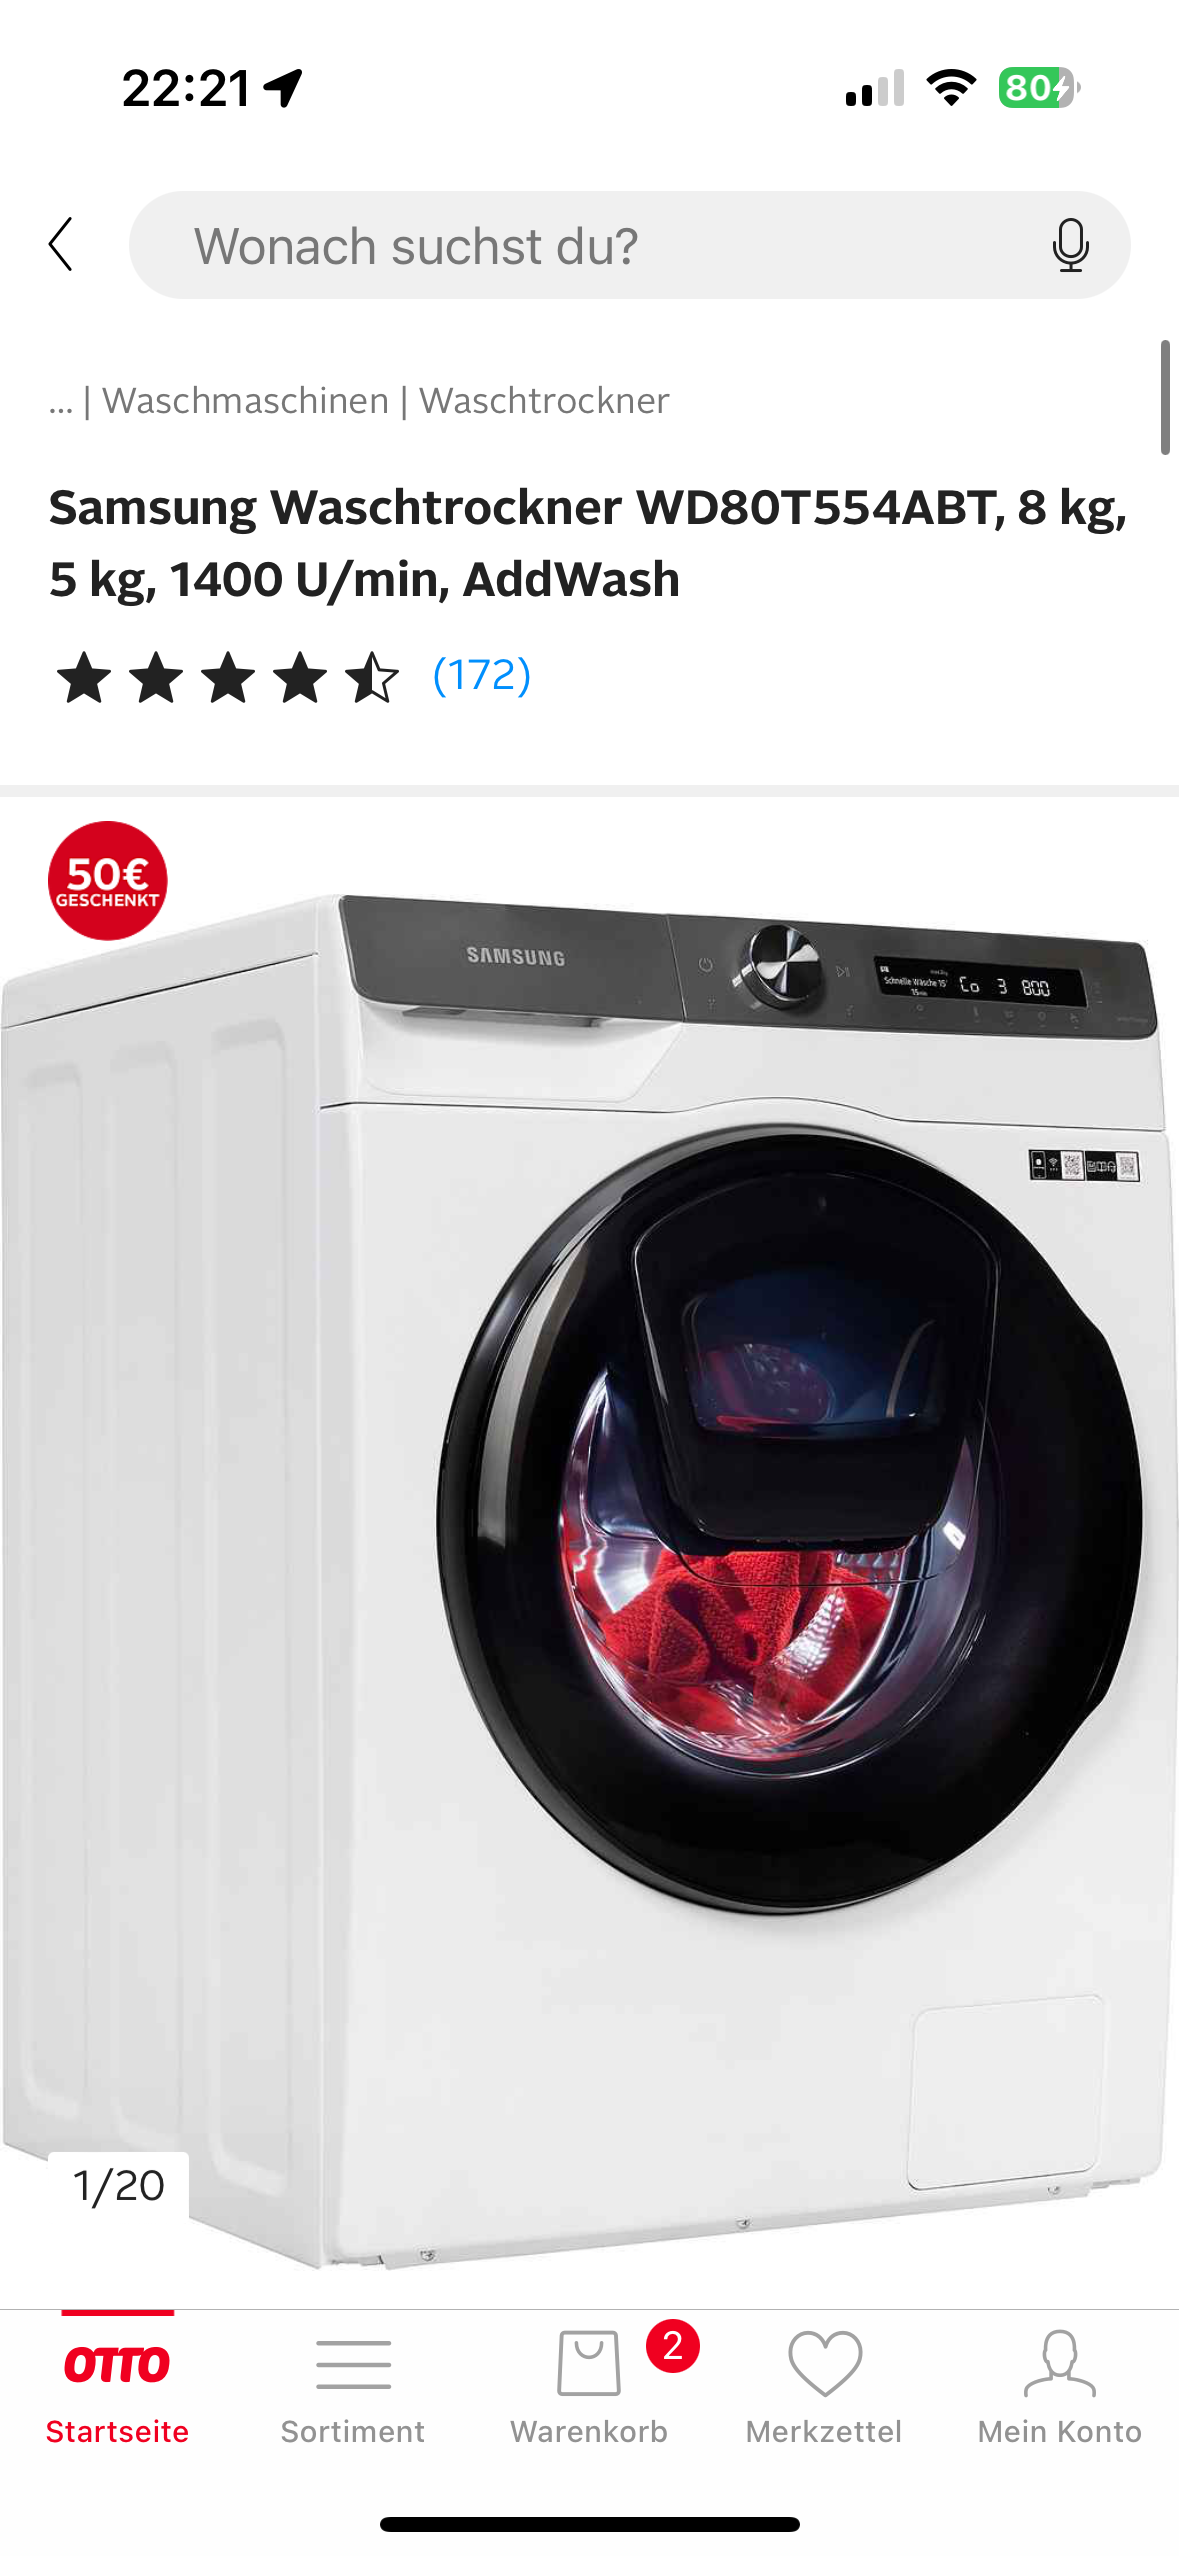 Würdet ihr diesen waschtrockner kaufen? (Waschmaschine, Trockner) Haushaltsgeräte